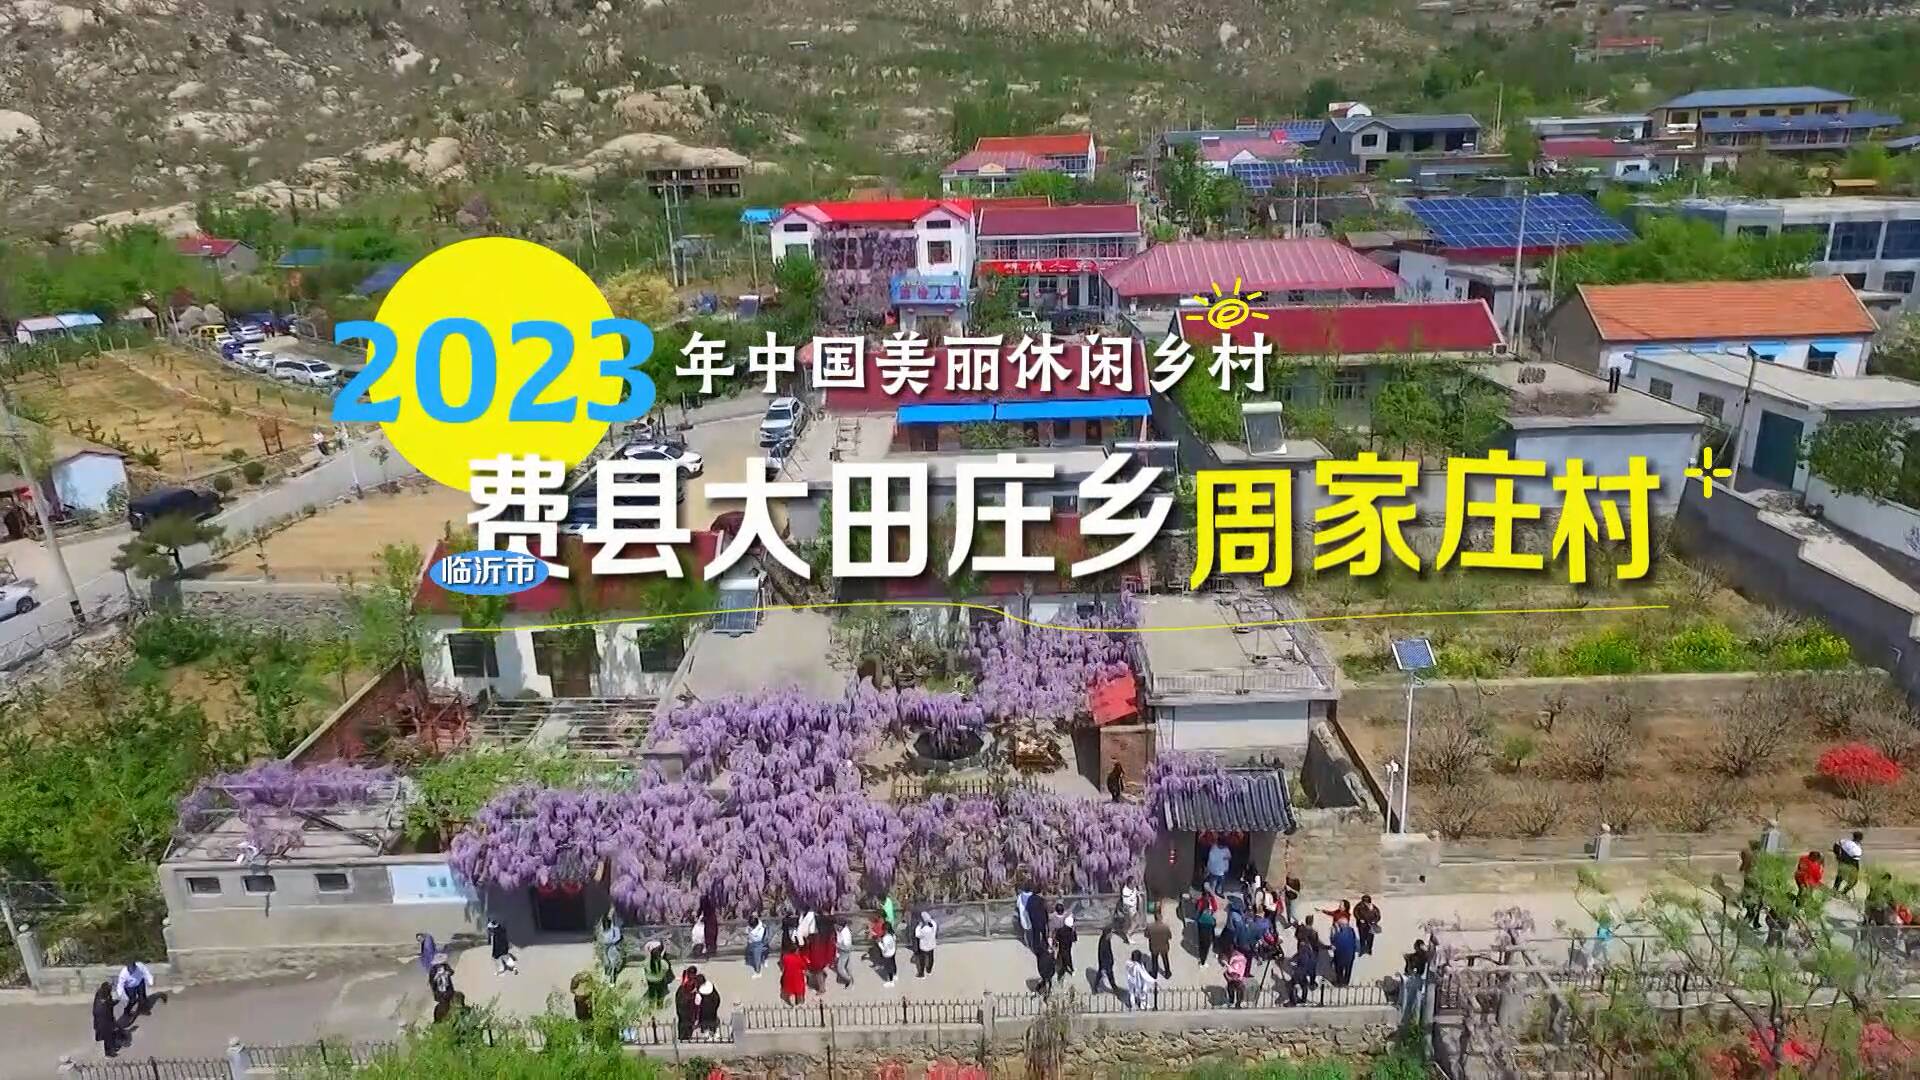 2023年中国美丽休闲乡村名单公示 临沂这个村入选